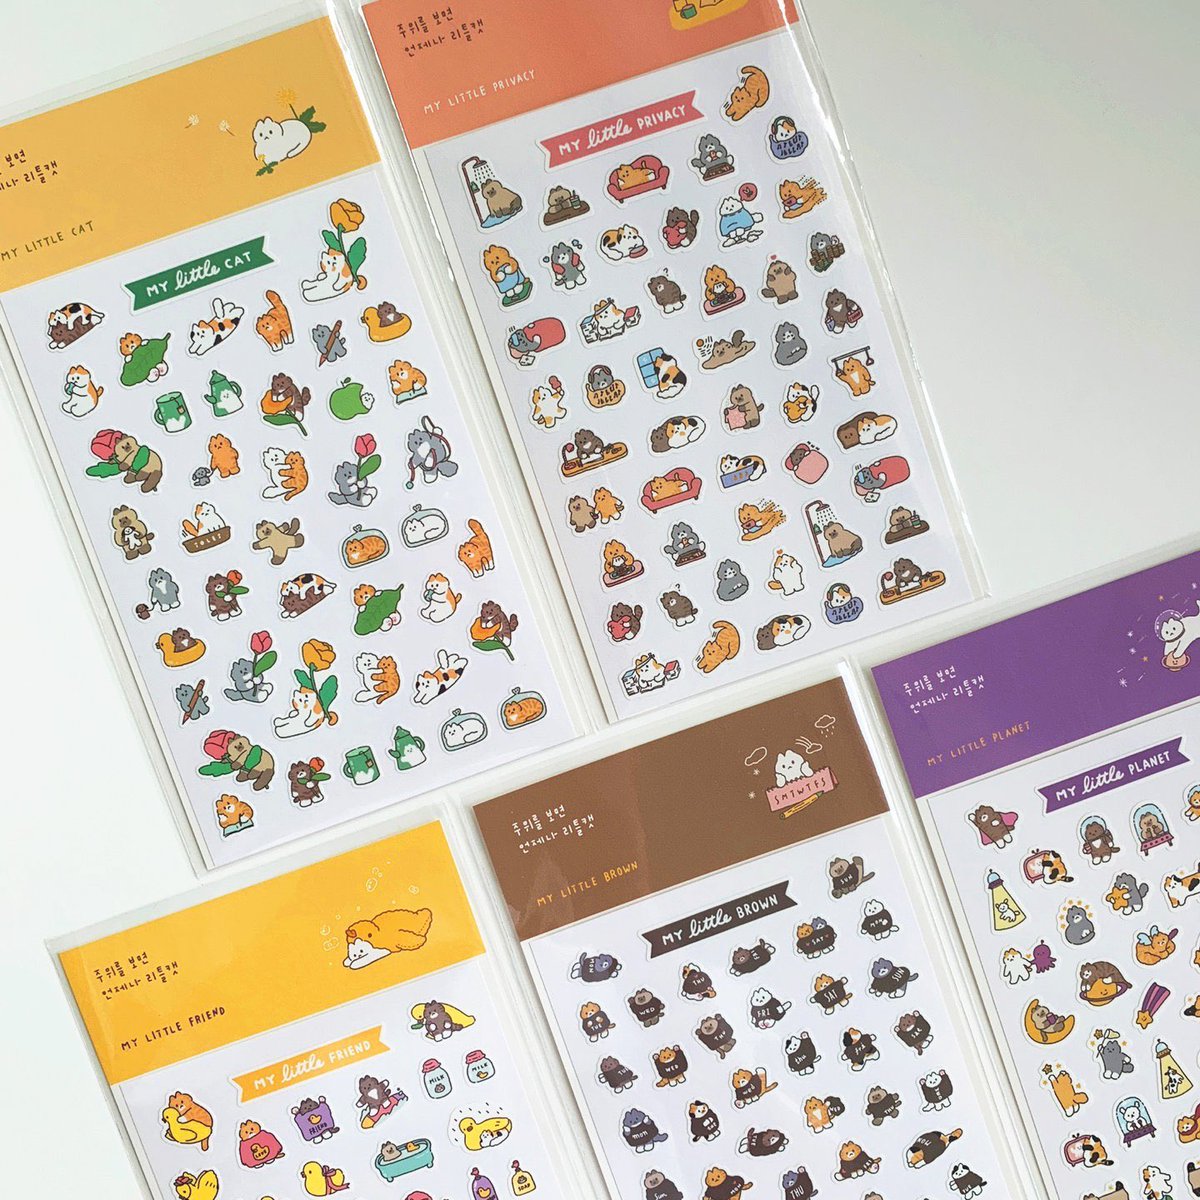 고양이빵팩 5 stickers, 2 postcards, 1 memo pad